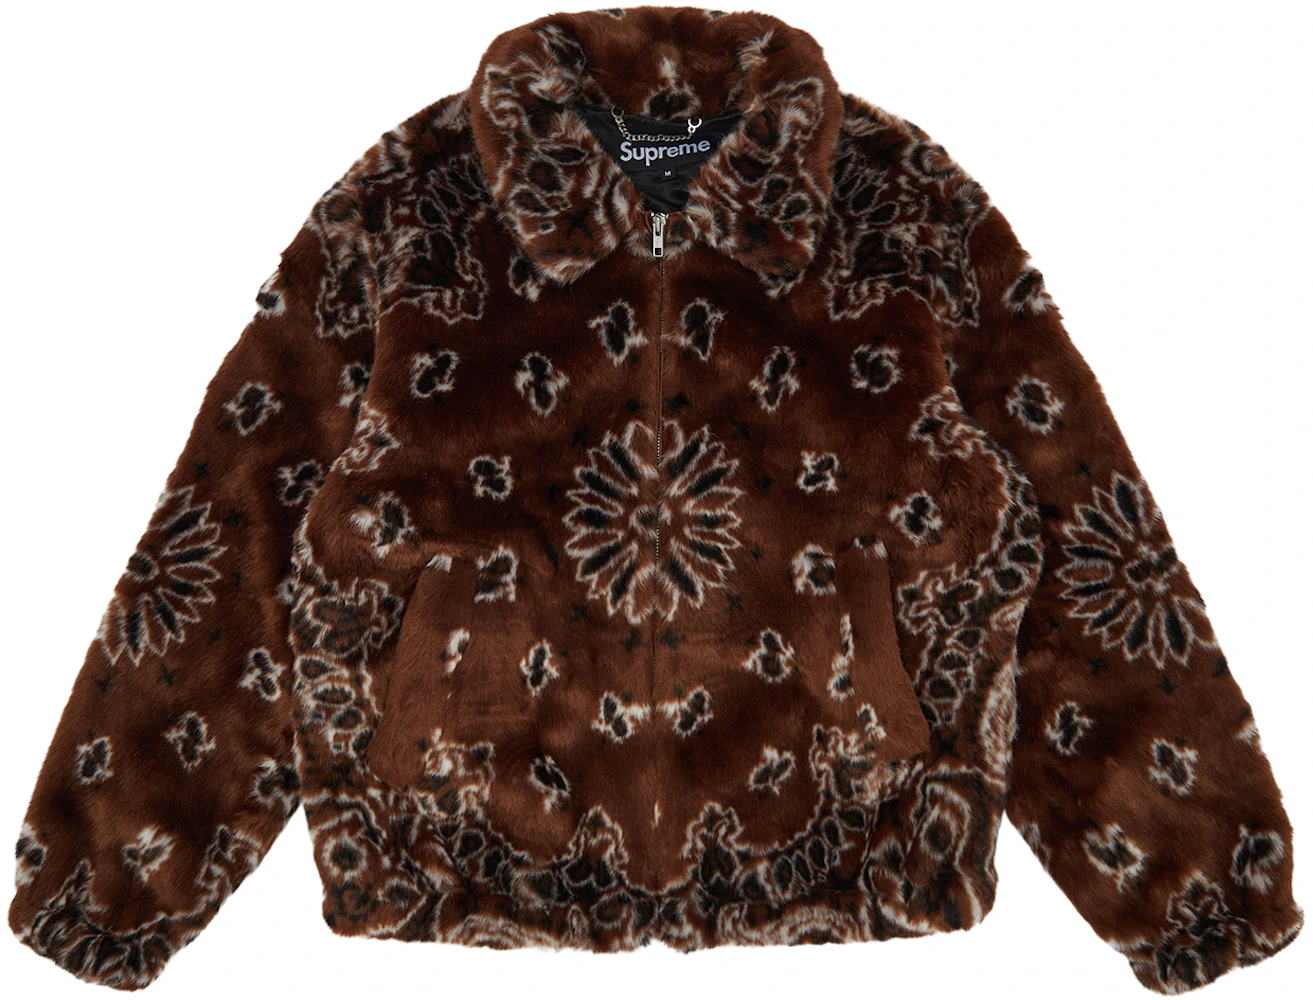 Outerwear Headgear Fur, brown supreme louis vuitton hoodie, fur